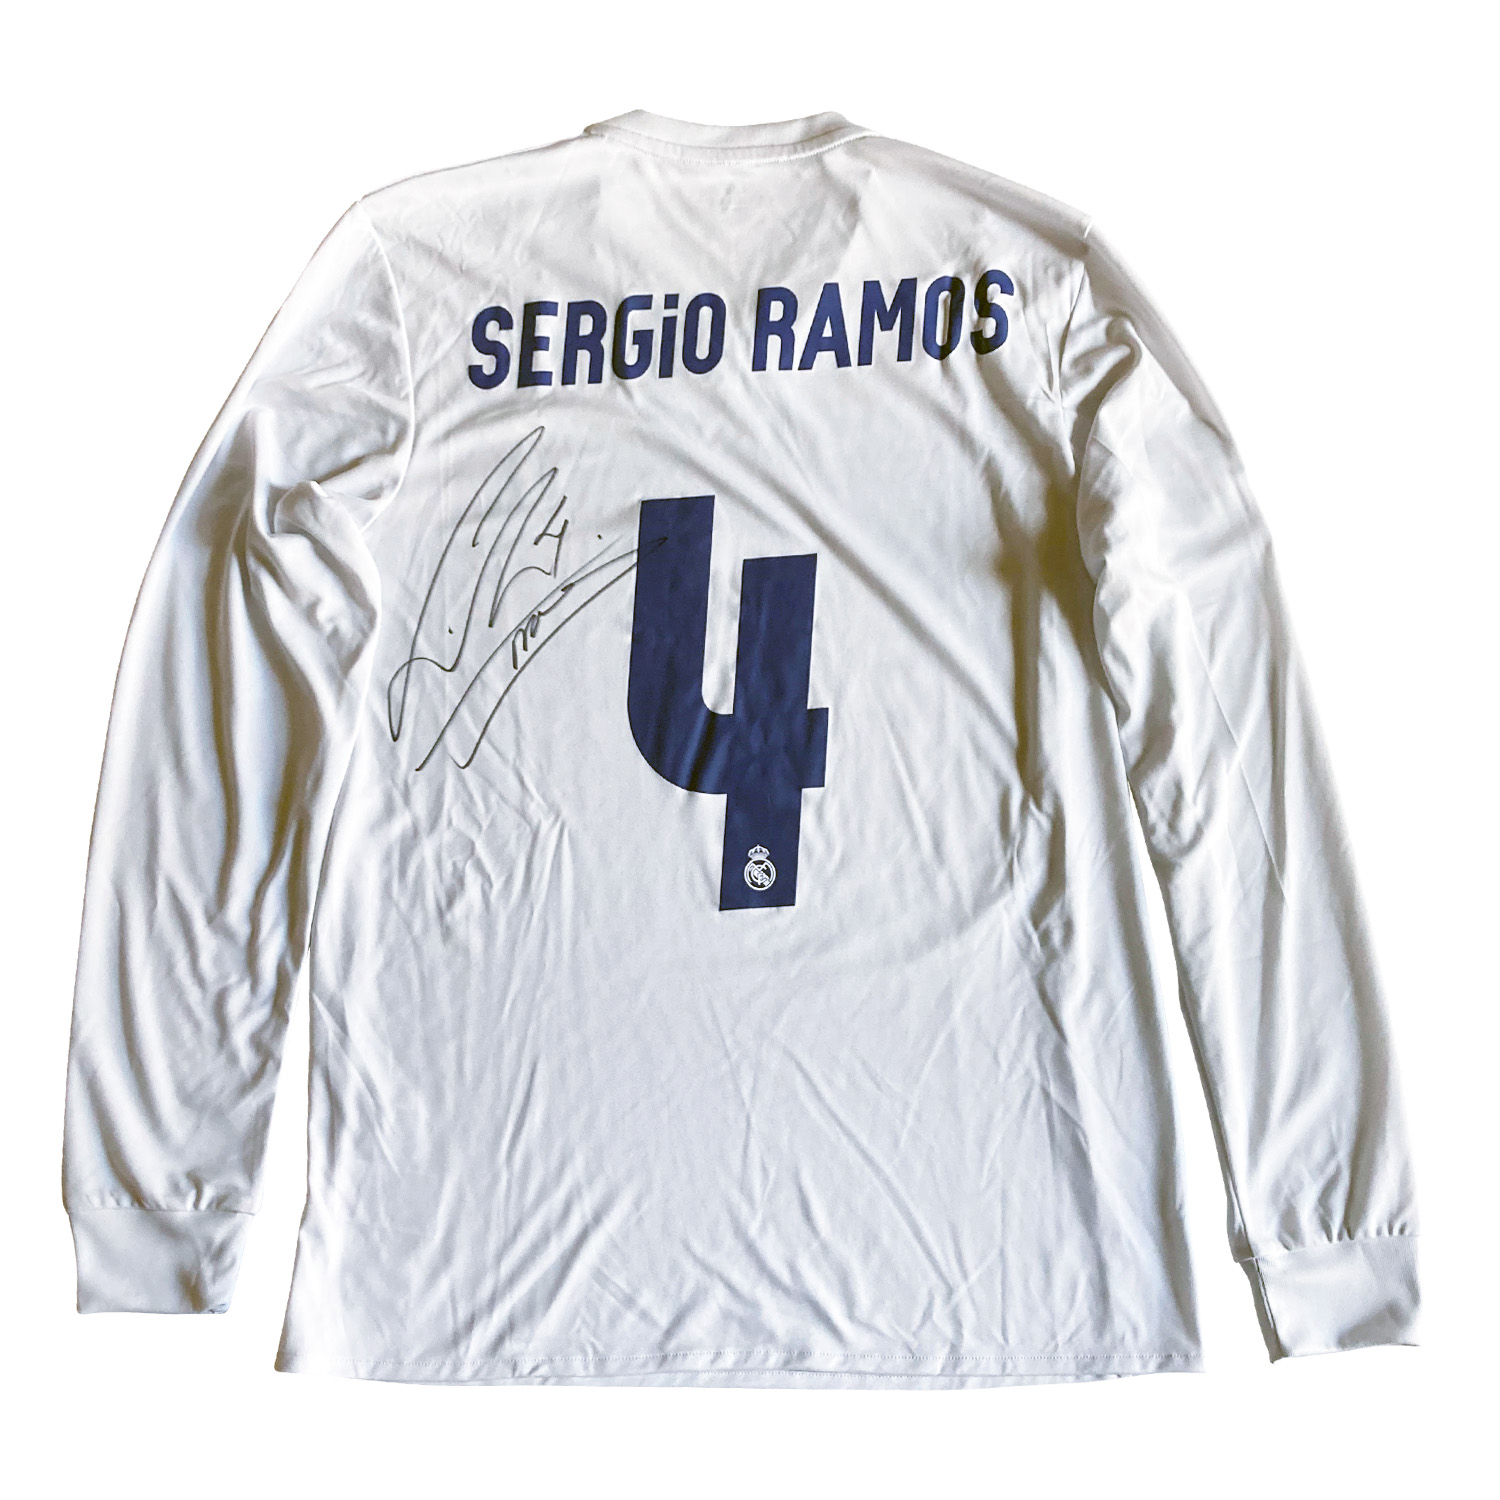 セルヒオ・ラモス直筆サイン入り選手支給レアルマドリード16/17パーリーユニフォーム / Sergio Ramos signed Real  Madrid 2016-2017 player issued home shirt PARLEY